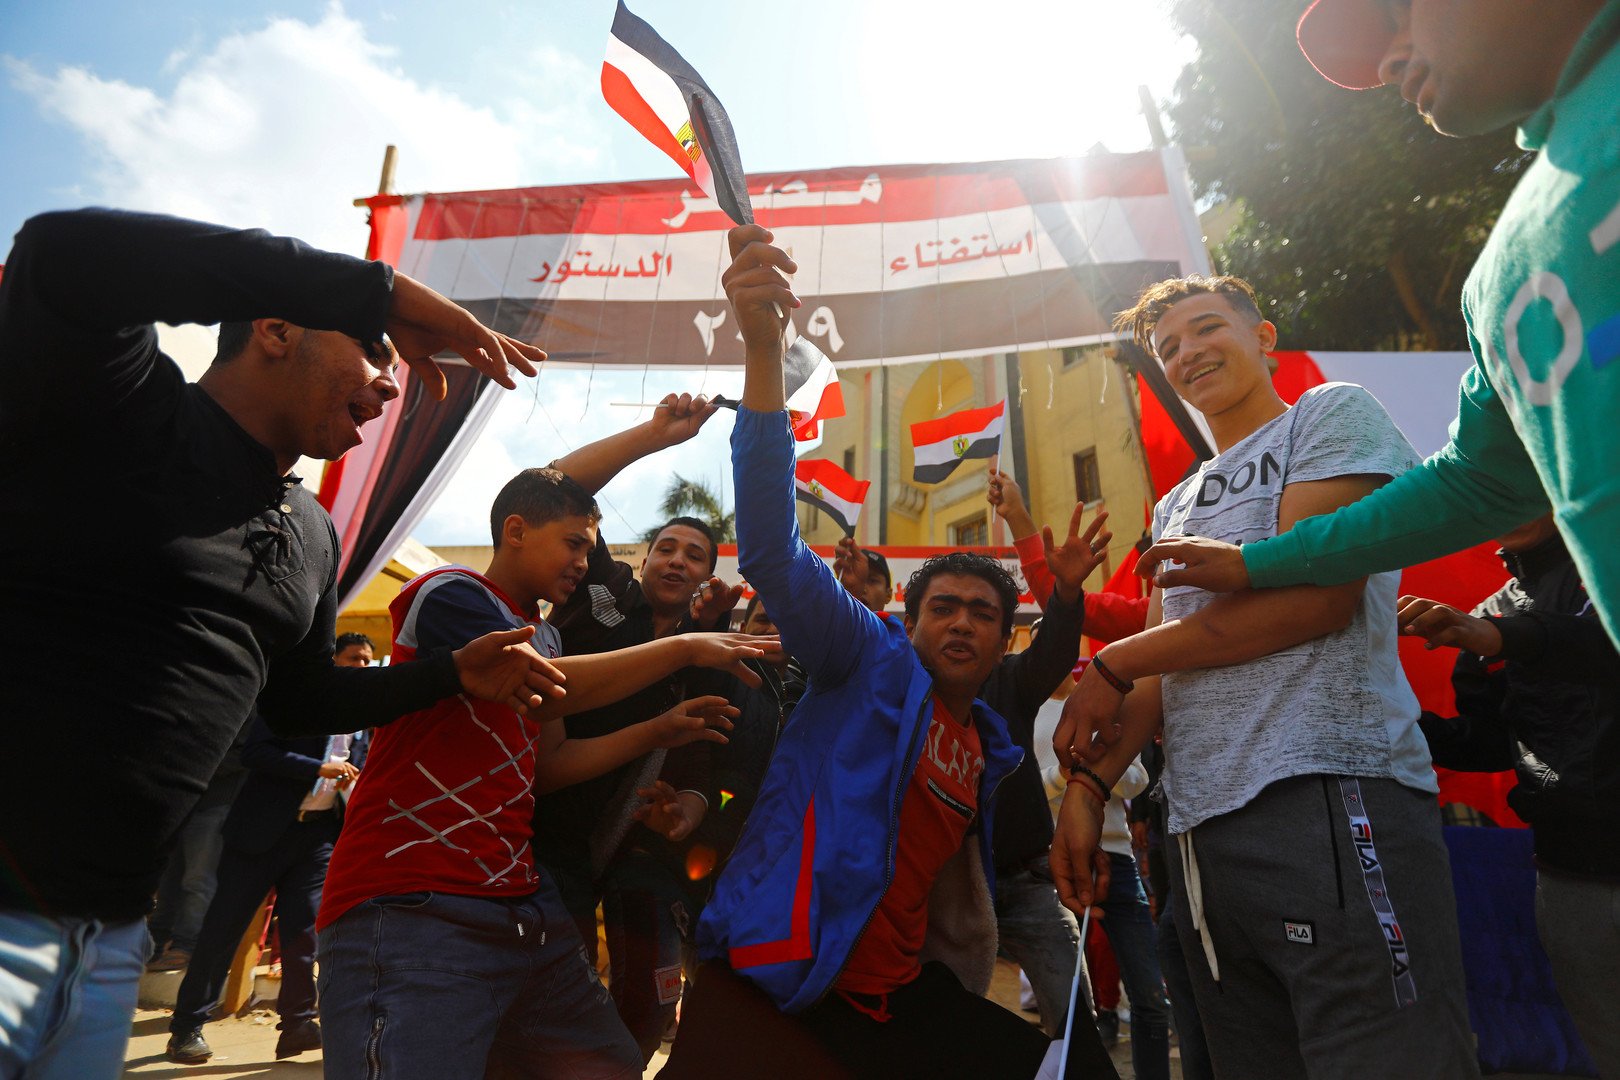 الوطنية للانتخابات المصرية: لا شكاوى حول رشاوى في استفتاء التعديلات الدستورية